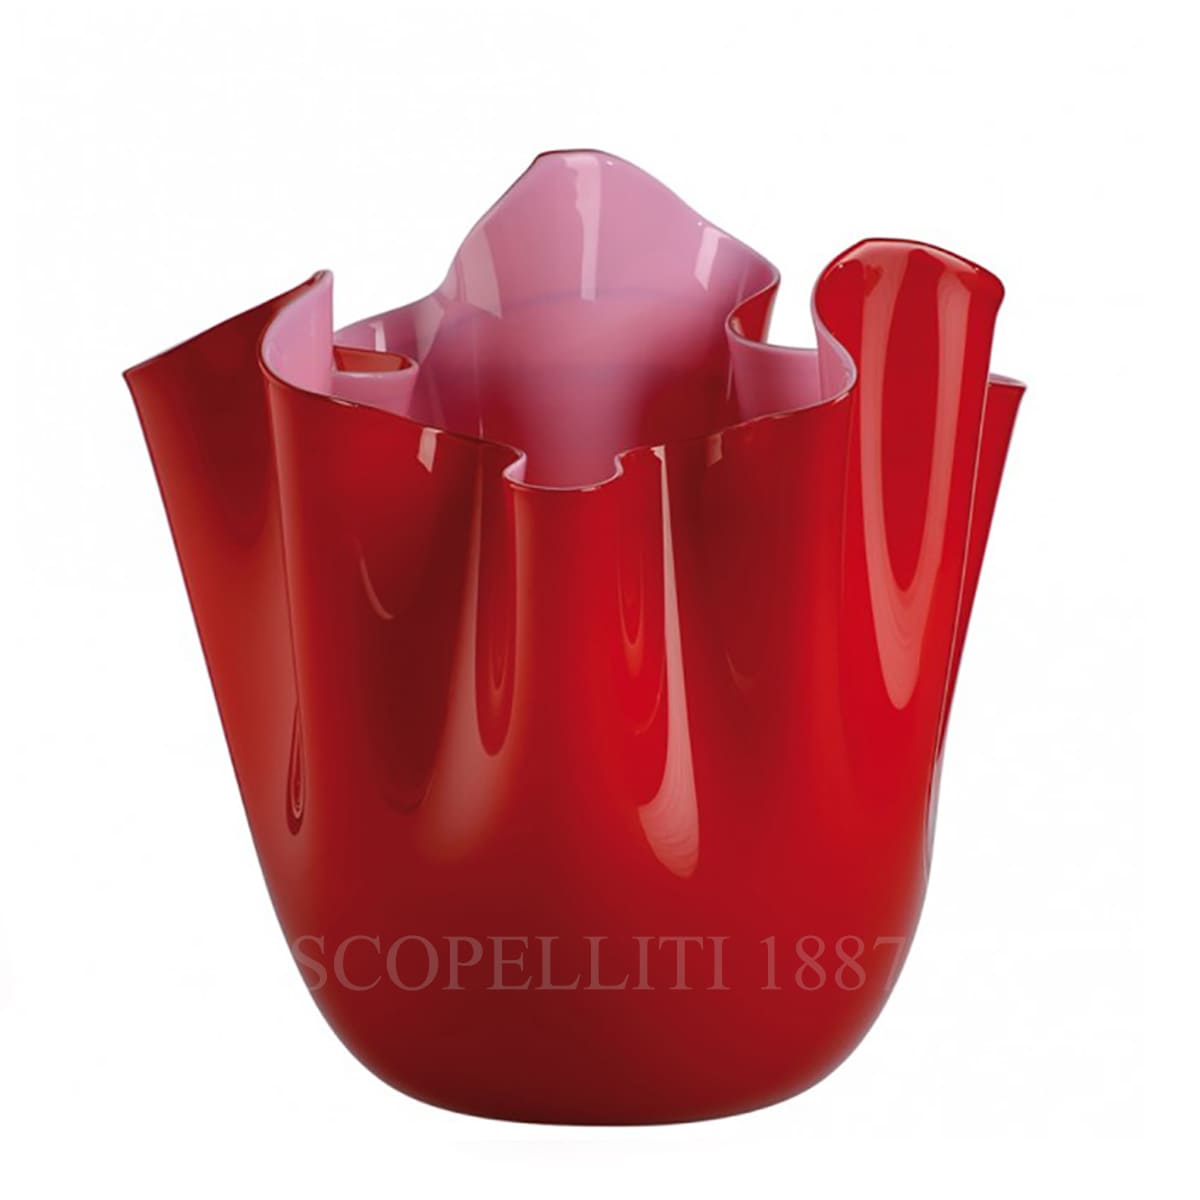 venini gift fazzoletto red vase